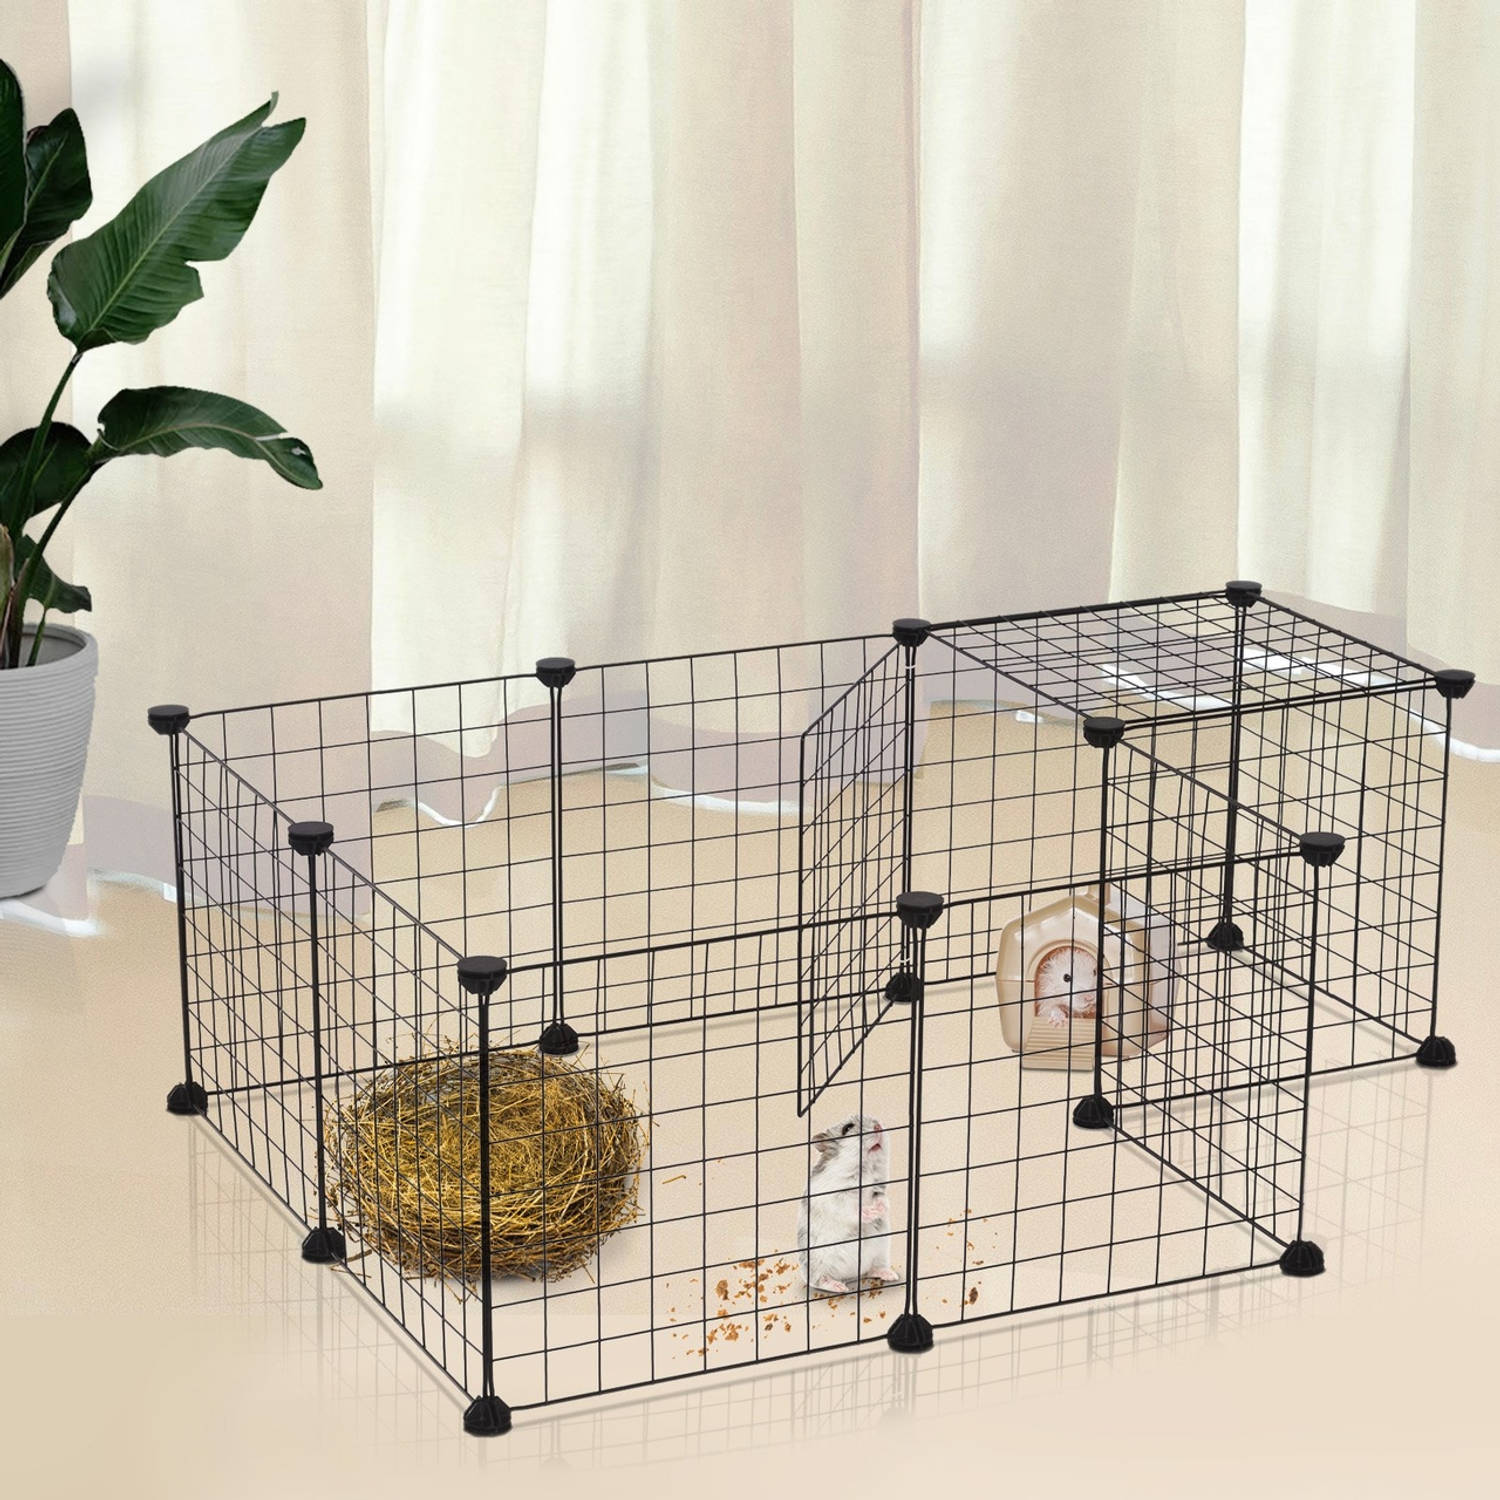 aanvaardbaar Vermeend verdiepen Ren voor kleine huisdieren - Konijnenren - Cavia ren - Hamster ren -  Dierenverblijf - Zwart - 106 x 73 x 36 cm | Blokker